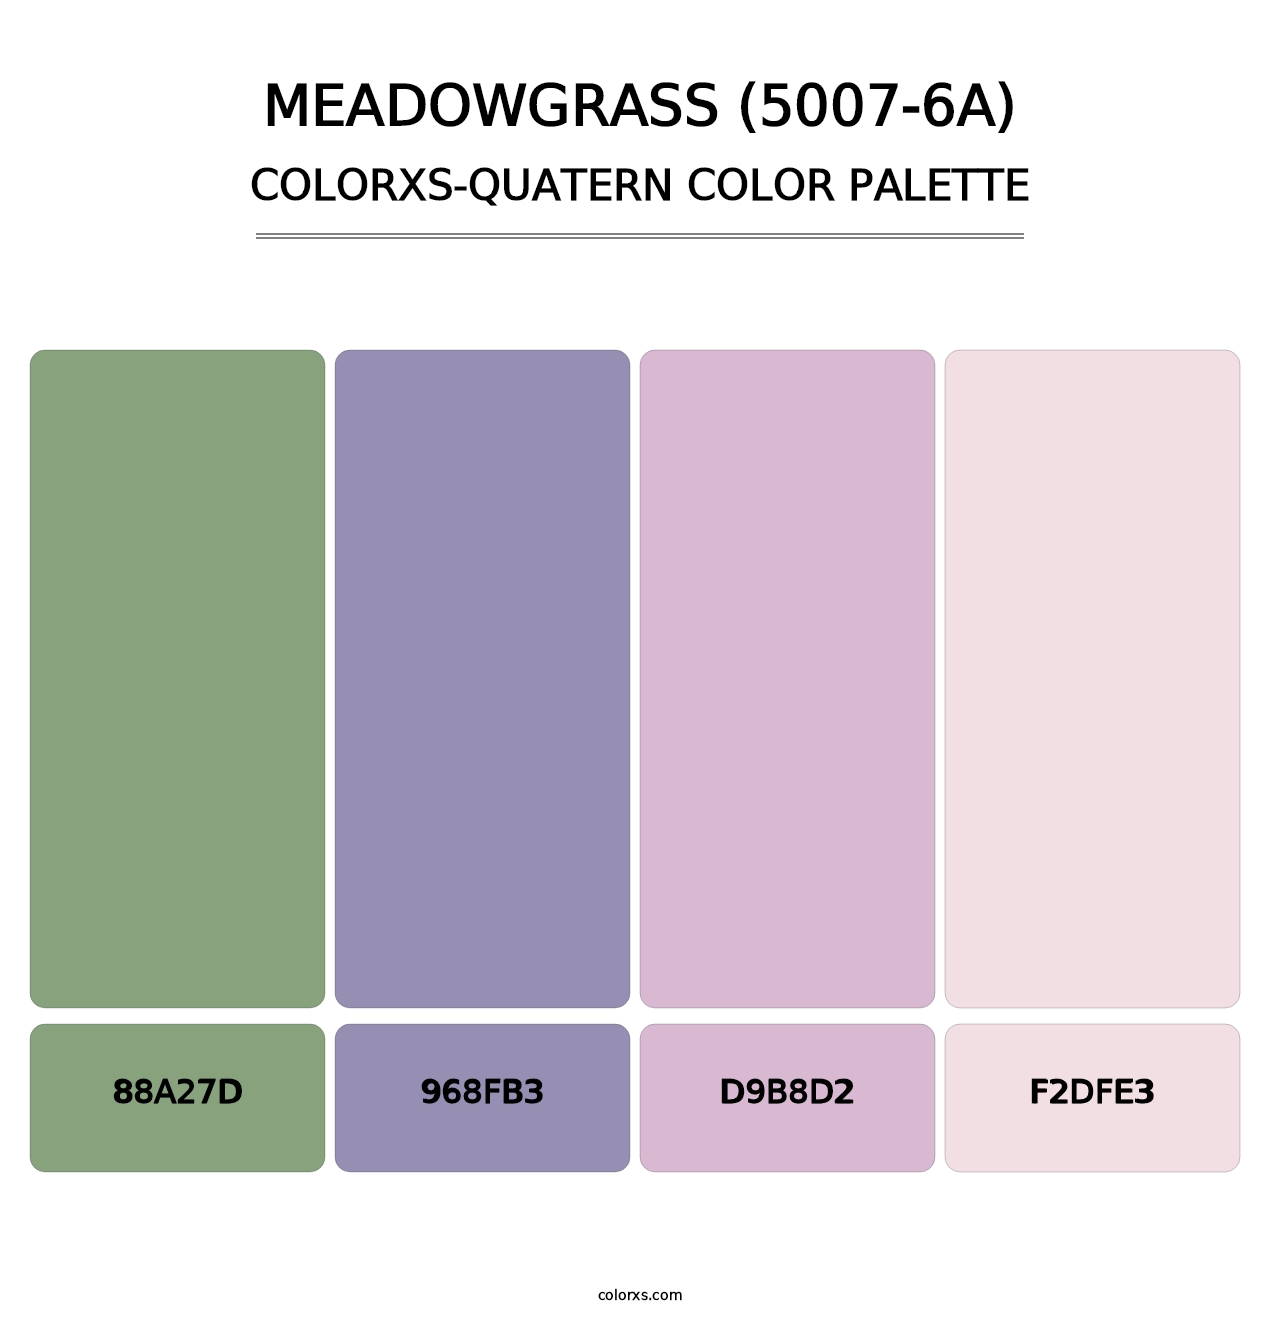 Meadowgrass (5007-6A) - Colorxs Quatern Palette